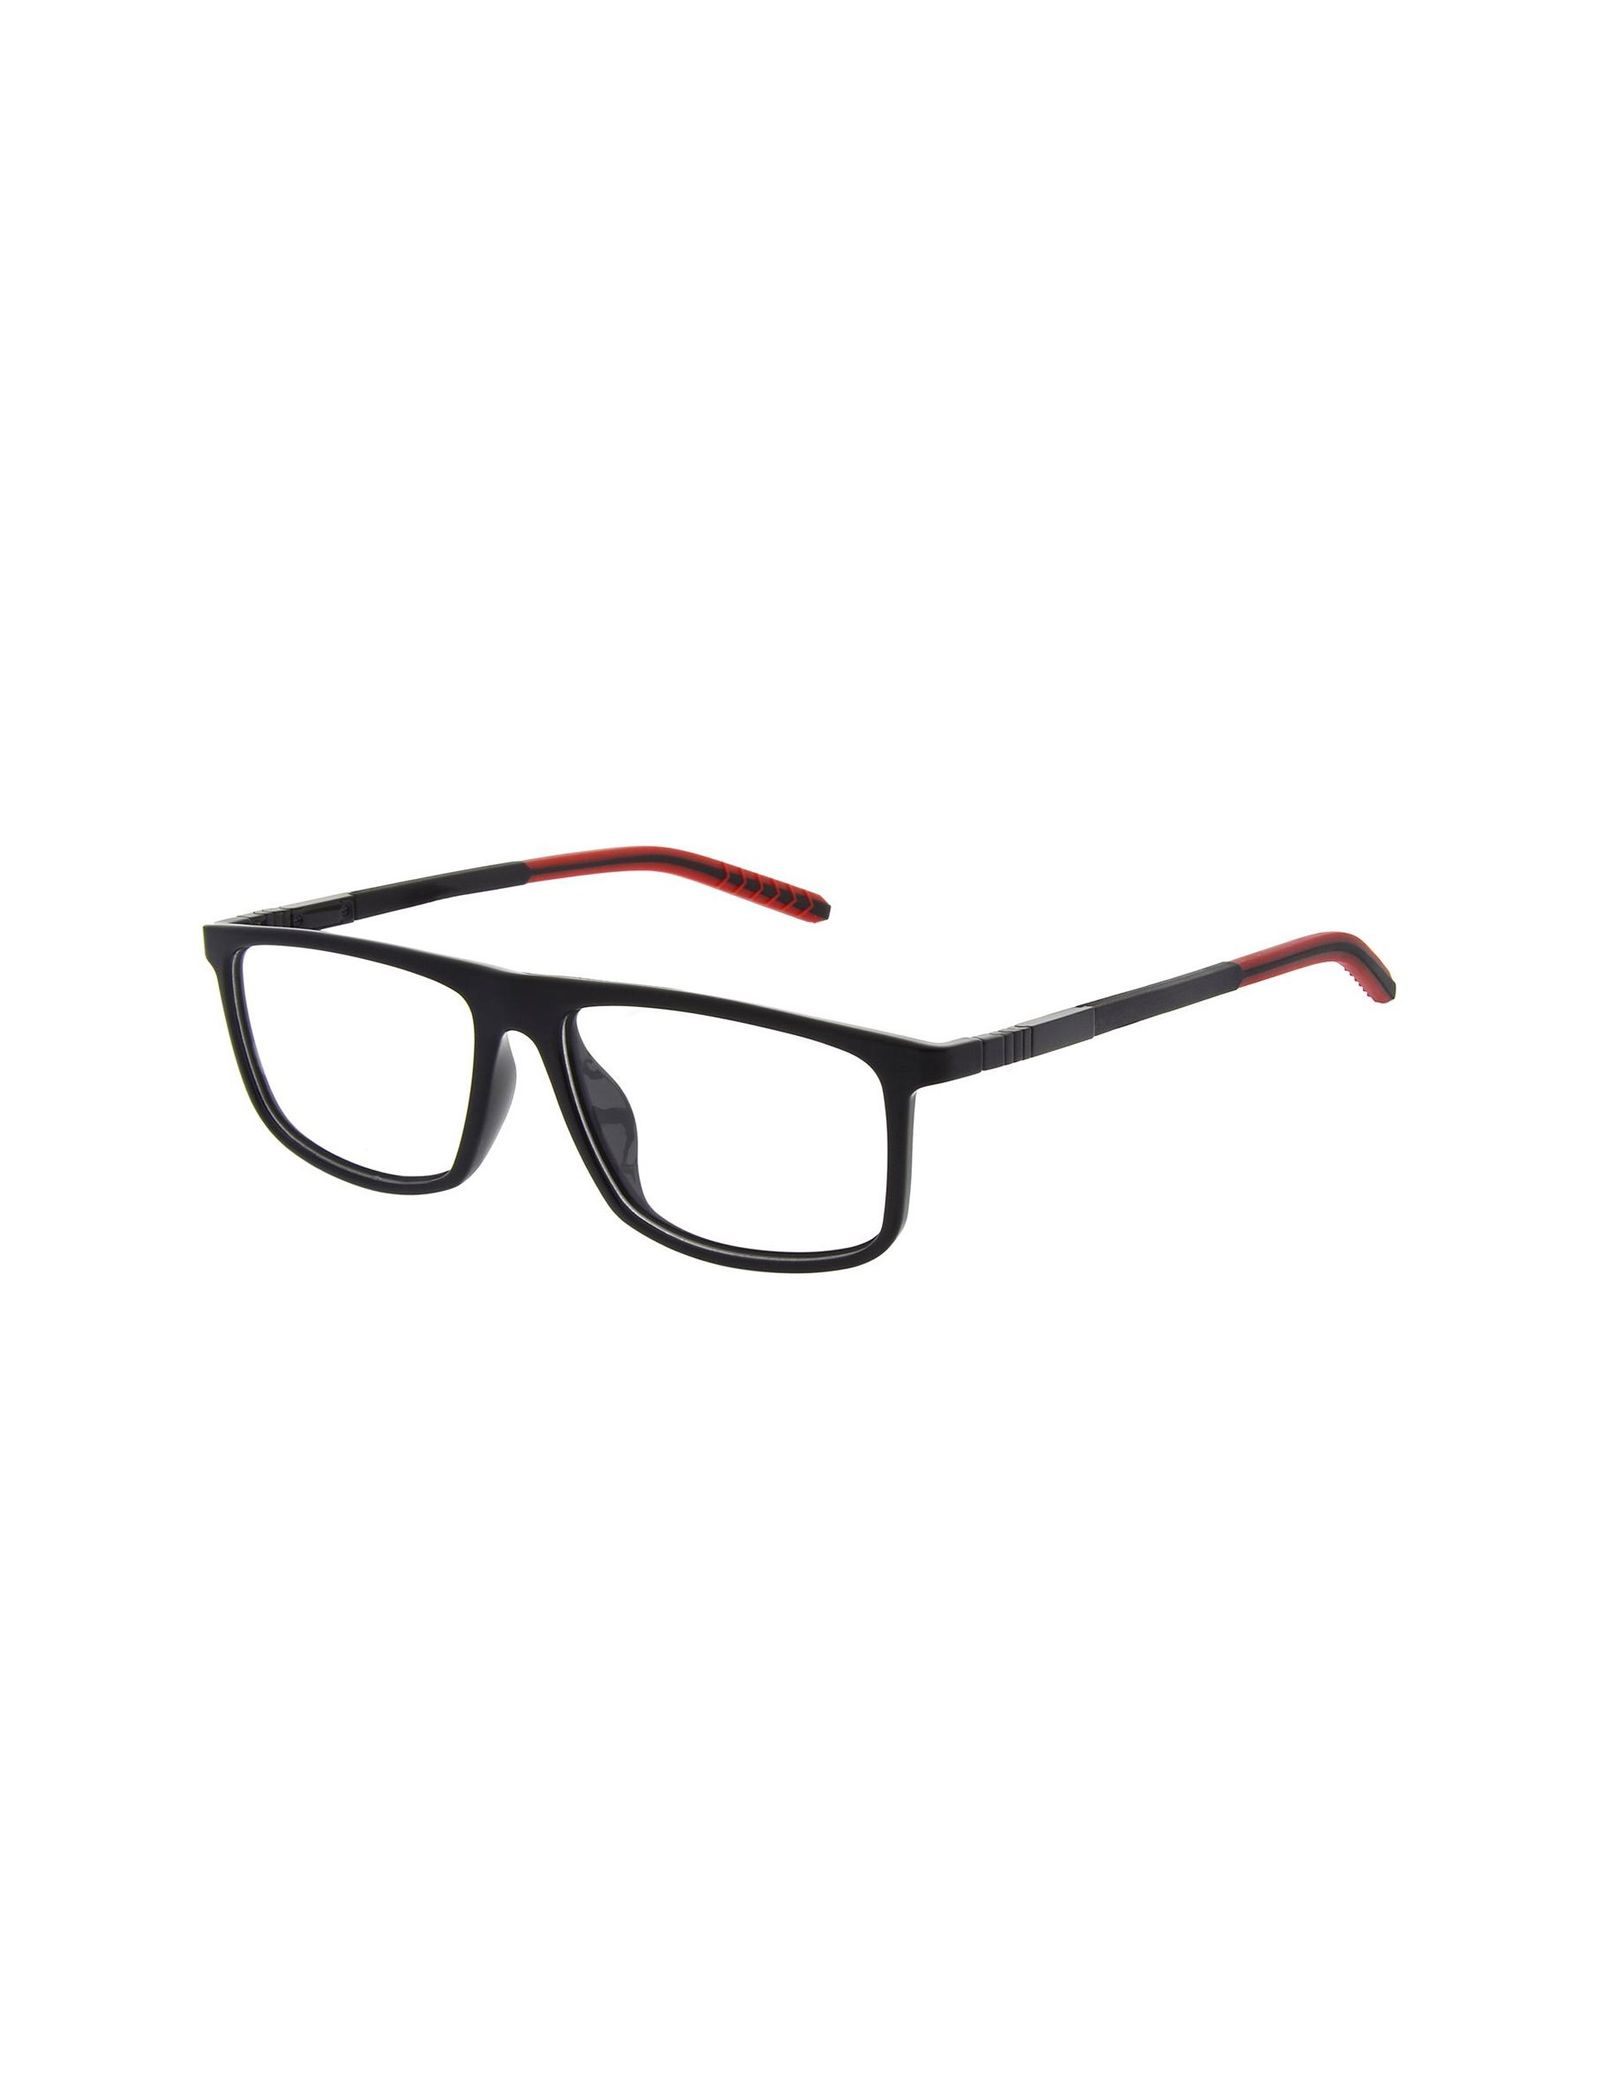 عینک طبی ویفرر مردانه - اسپاین - مشکي و قرمز - 2